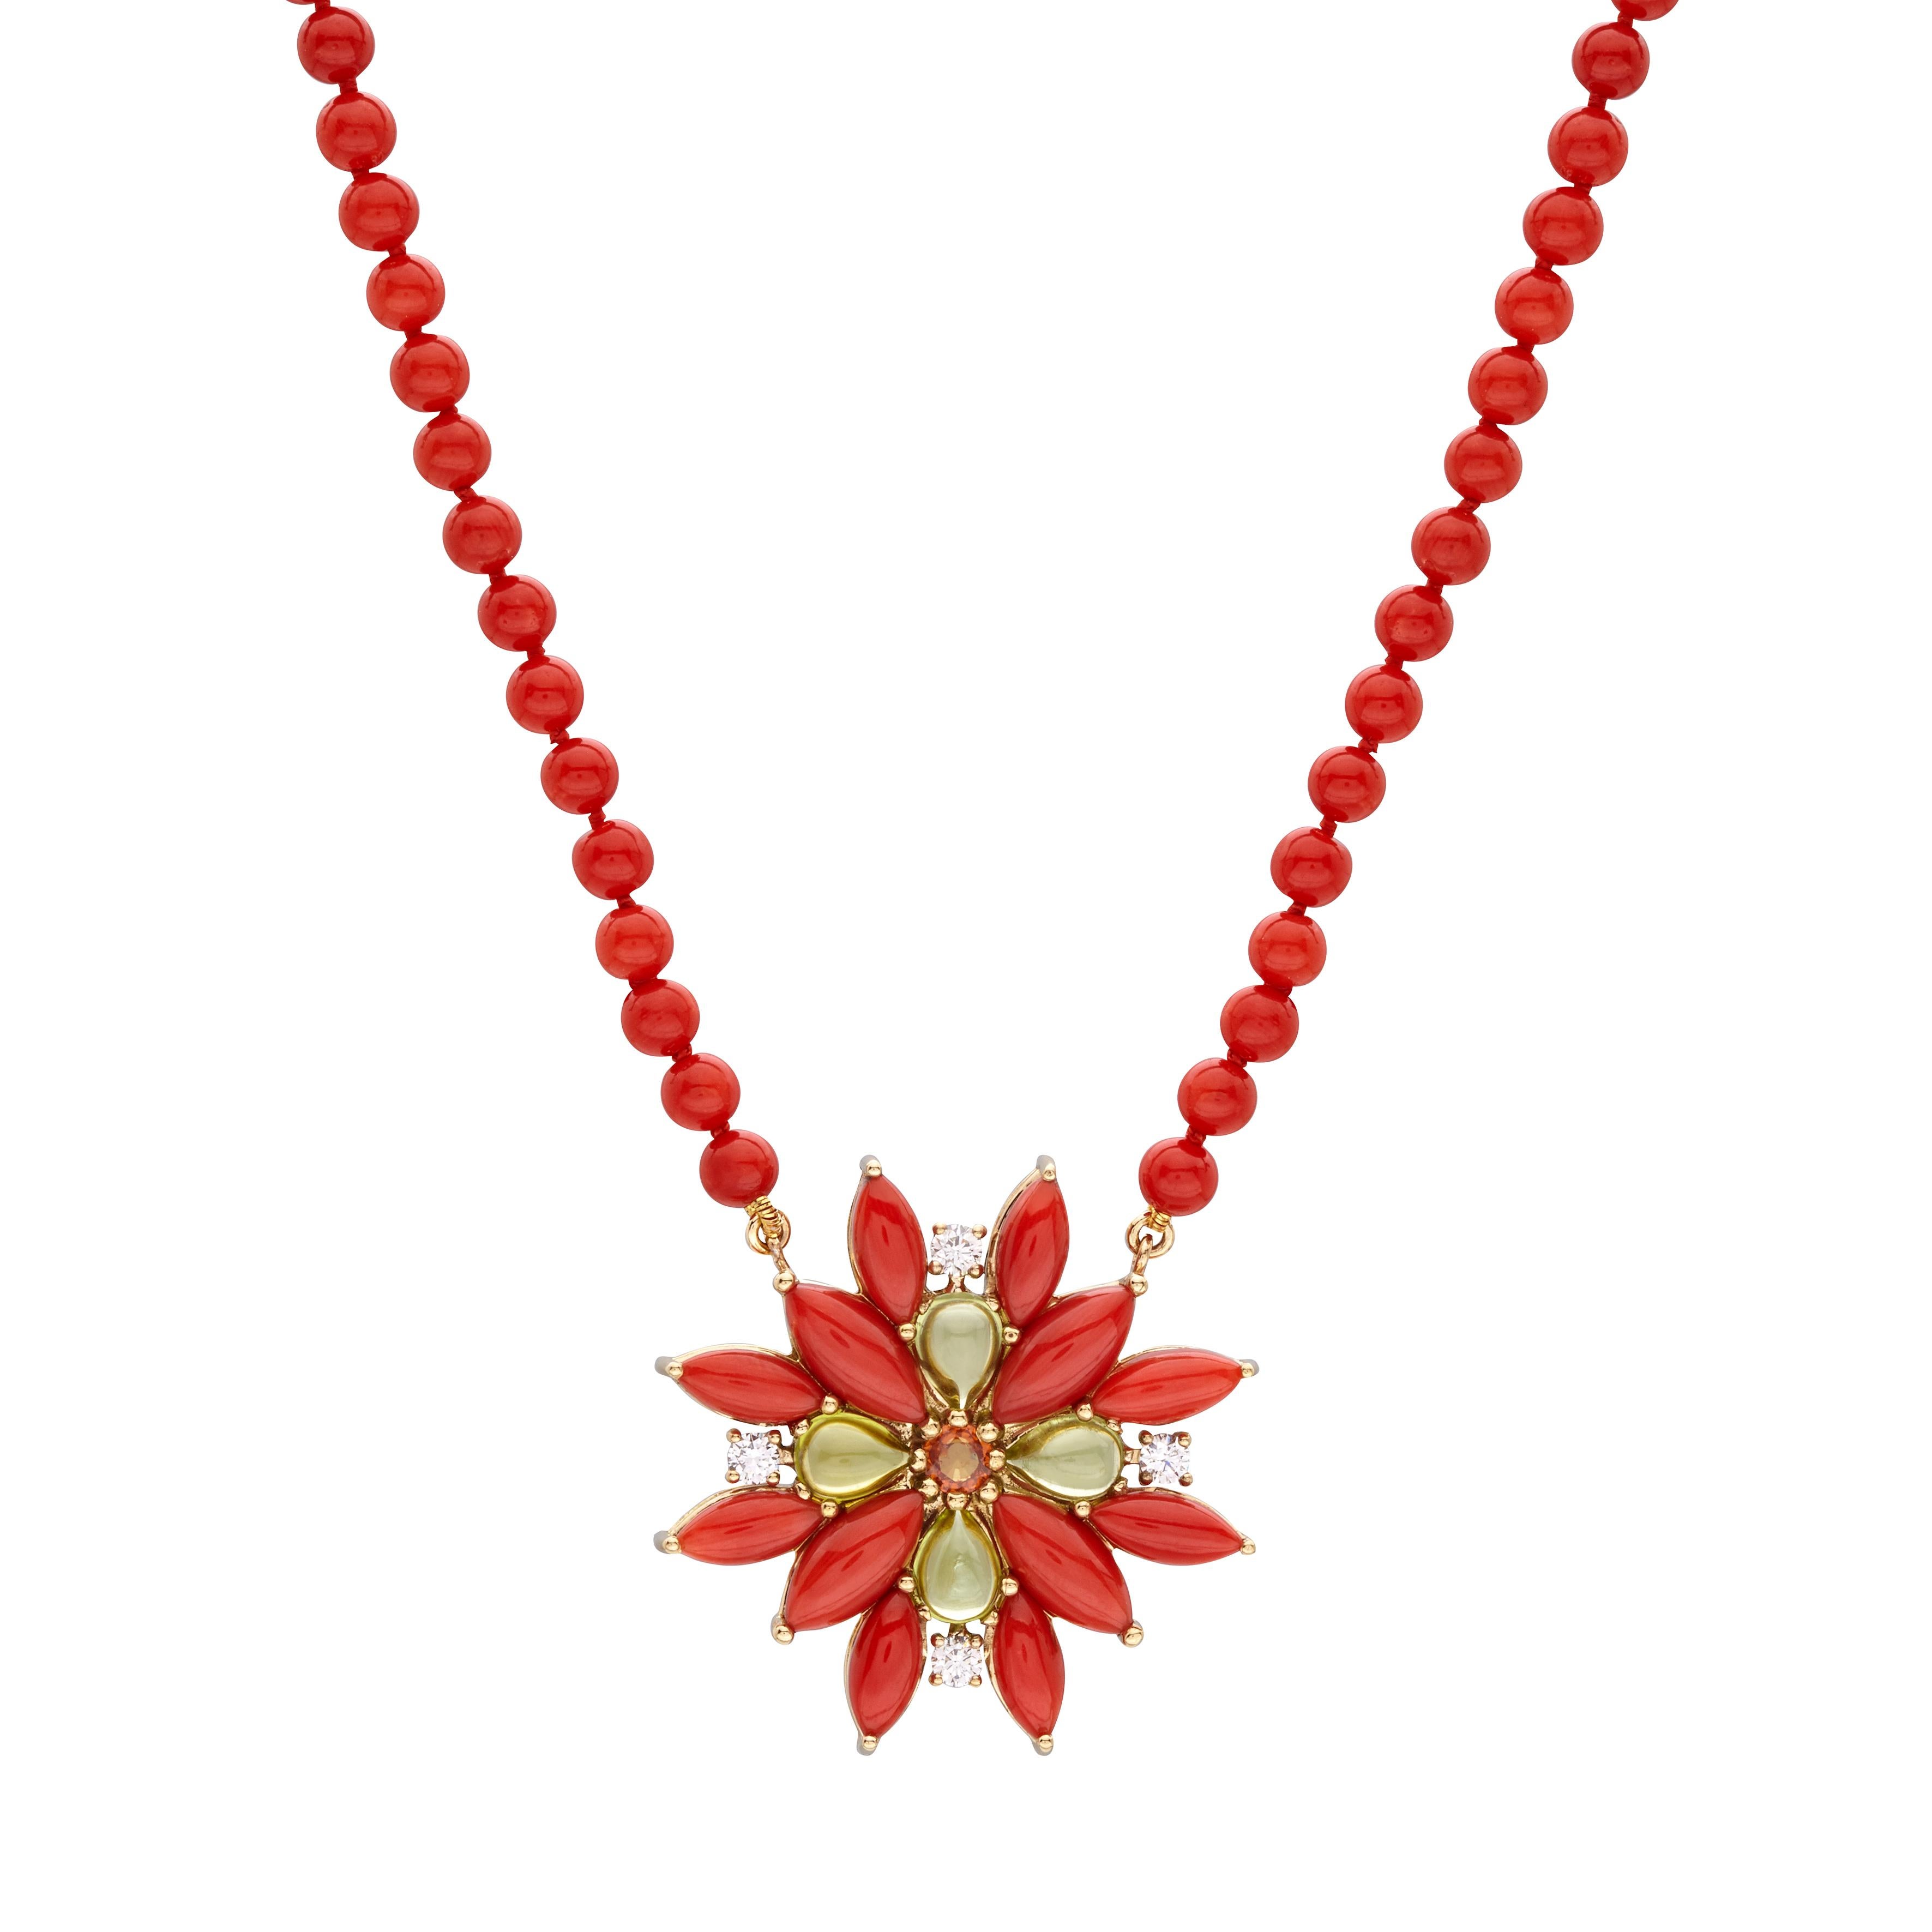 Collier long en or jaune 18 carats avec perles de corail rouge, grenat mandarin, péridot et diamants